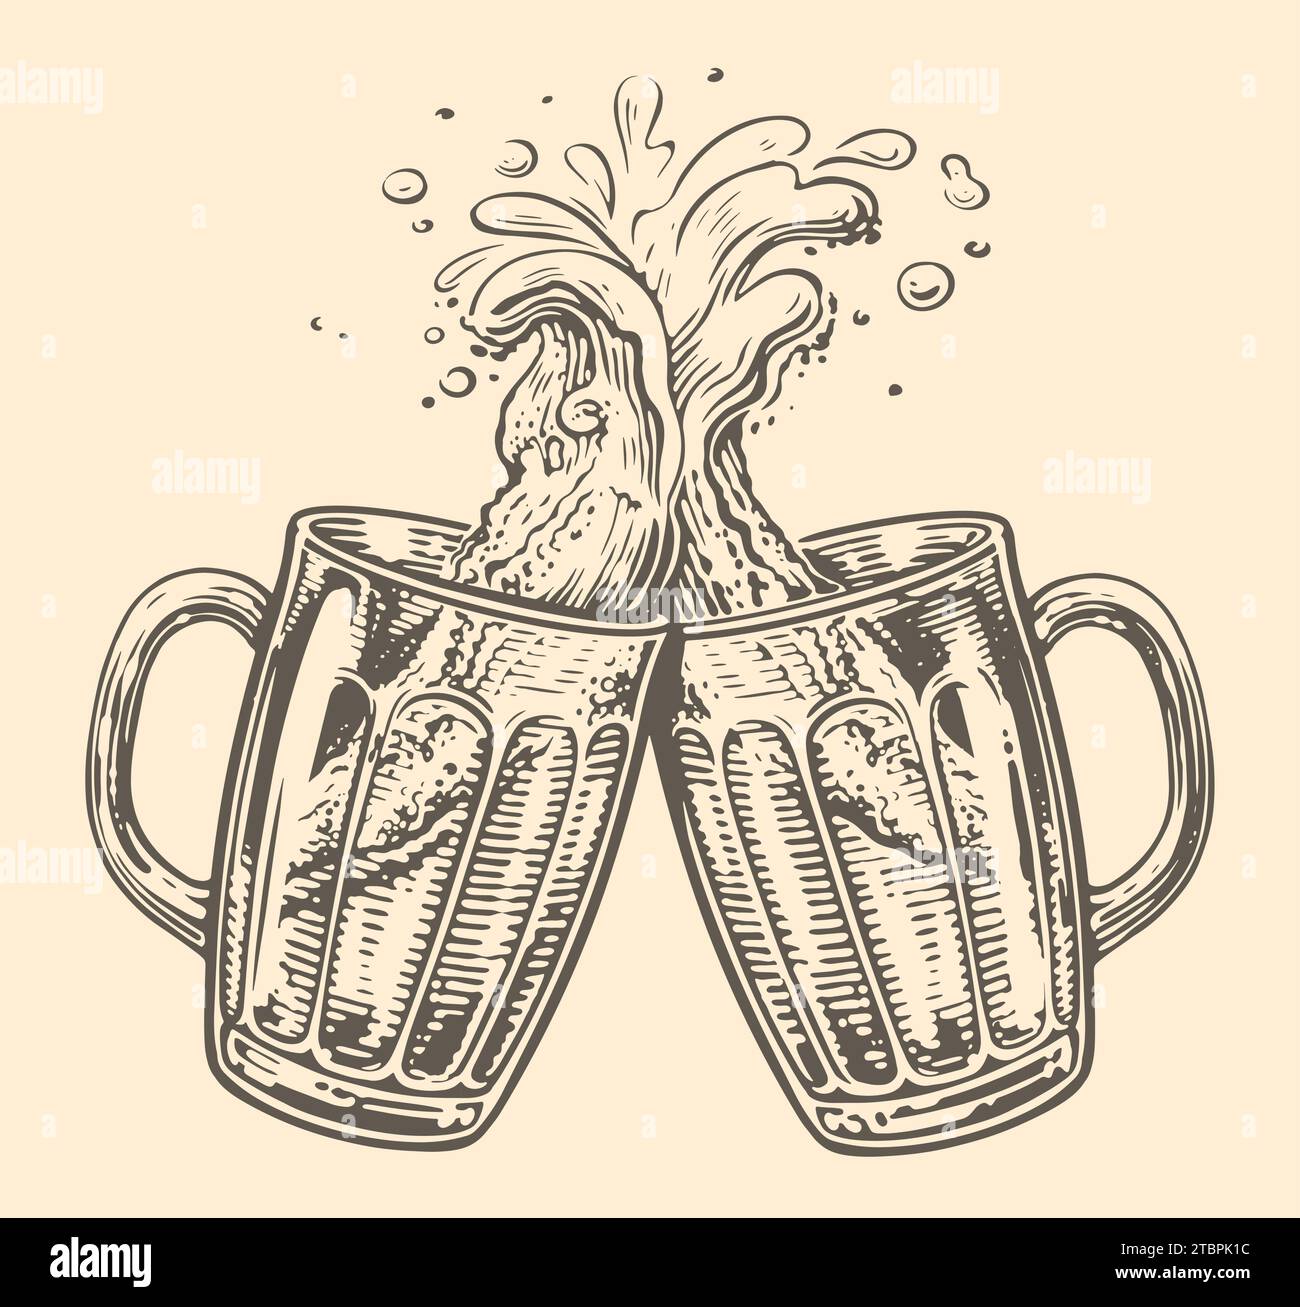 Zwei Tassen Bier klirren mit einem Spritzer Schaum in Toast. Vektor-Illustration für Menü-Design für Pub-Restaurant-Brauerei Stock Vektor